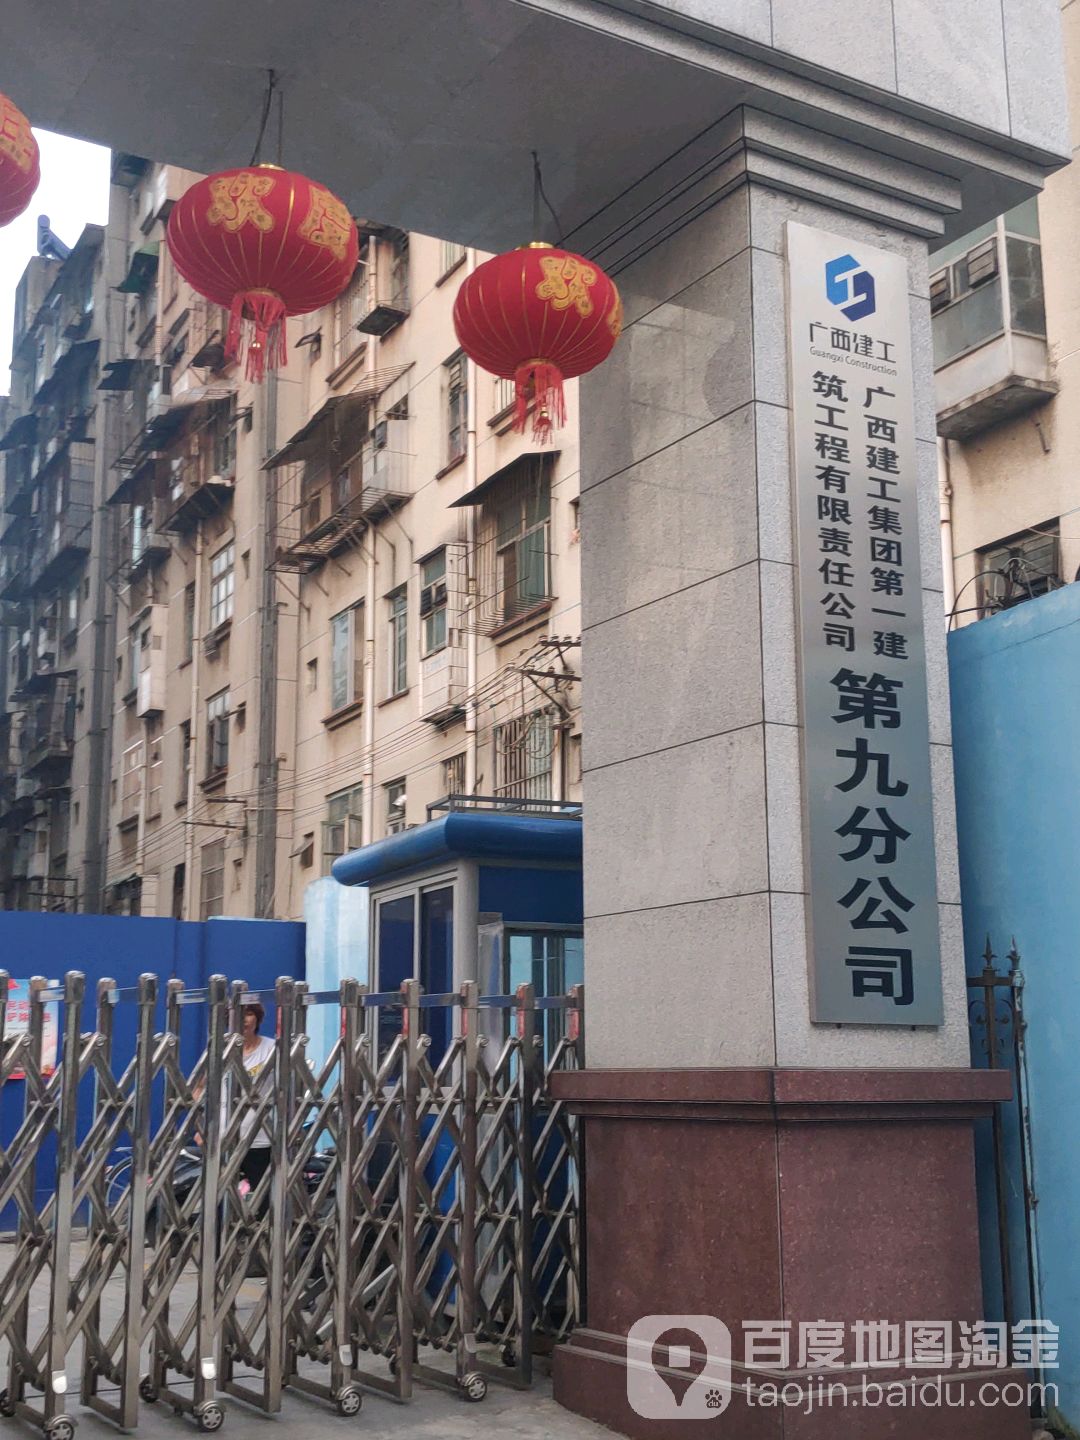 廣西建工集團第一建筑工程有限責任公司第九分公司(杭州路)